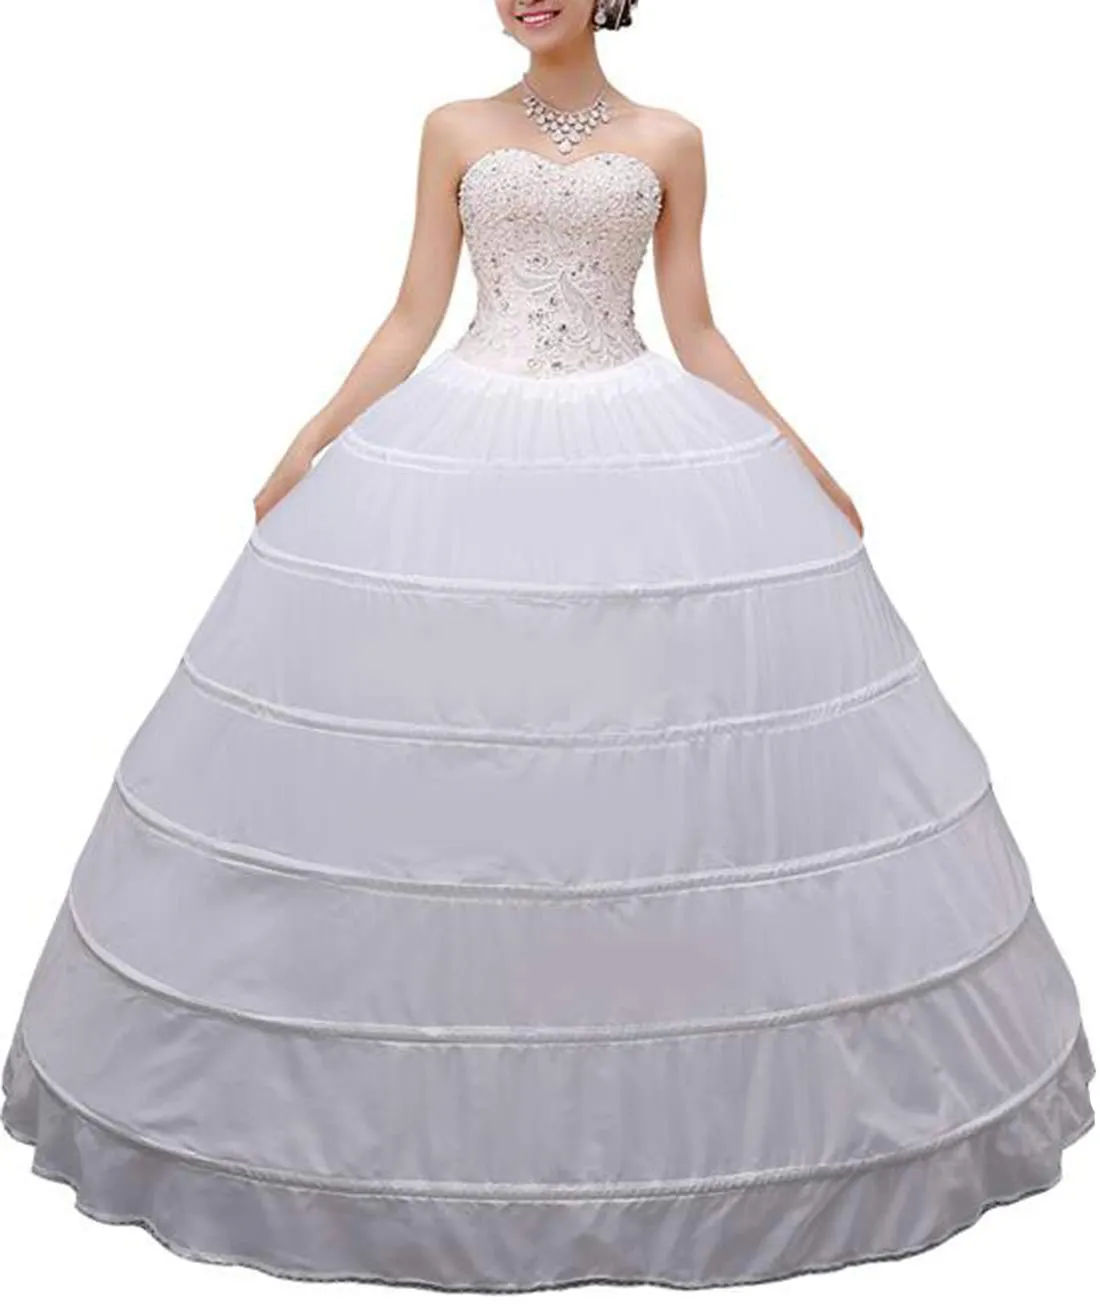 Vestido de baile feminino de crinolina, de alta qualidade, saia de 6 argolas, saia longa para casamento, vestido de noiva, vestido de baile 2620